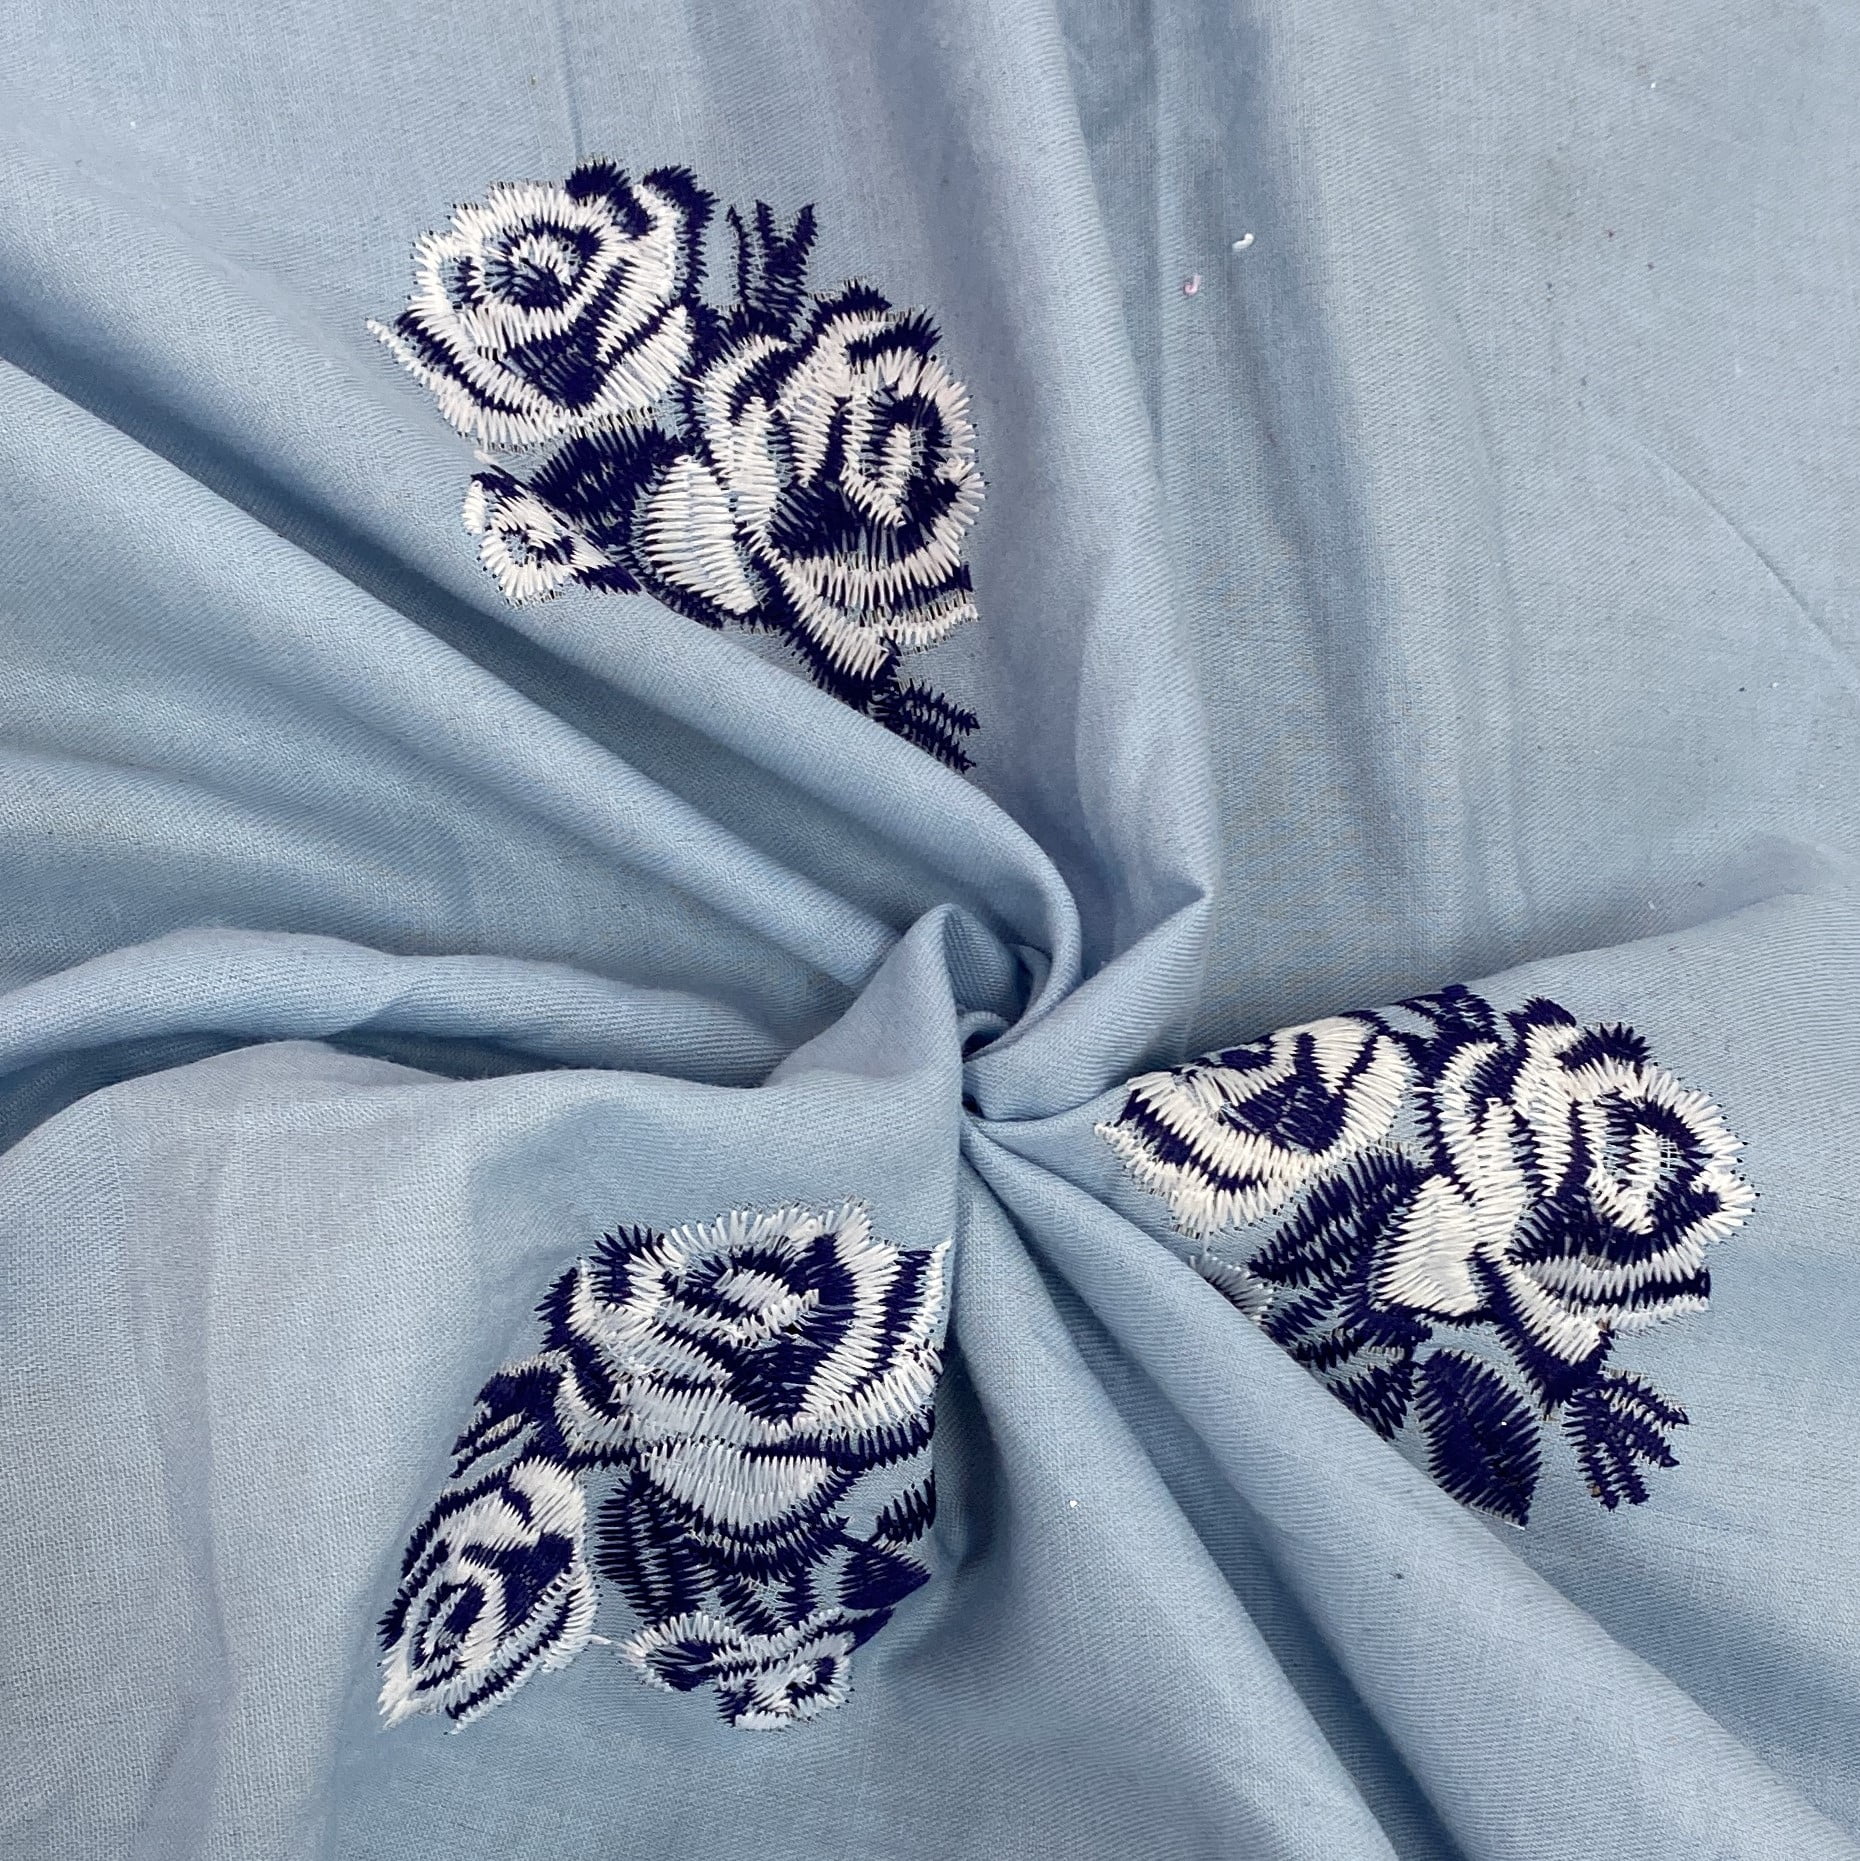 Tecido Mescla Jeans Bordado Azul Claro com Rosas Brancas com Azul - Empório dos Tecidos 